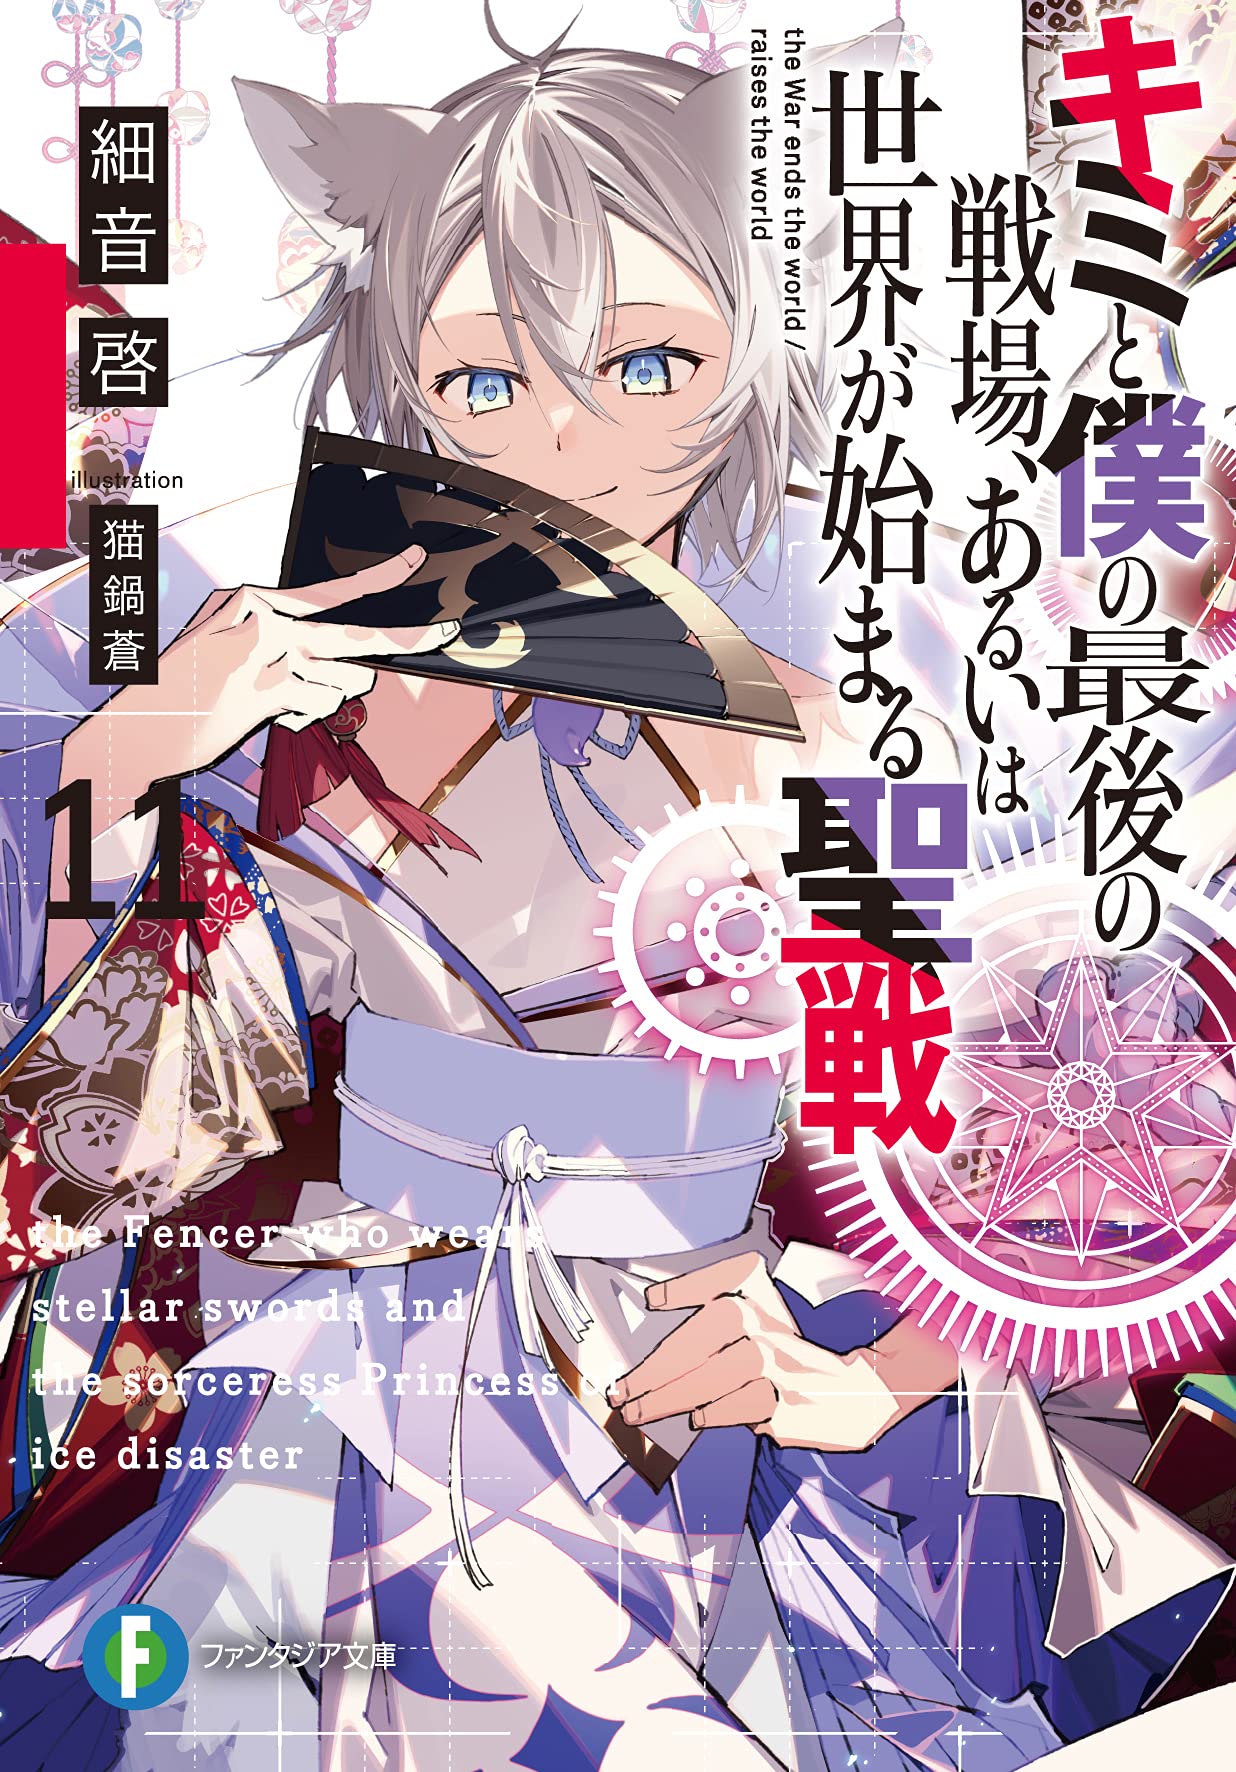 Kimi to Boku no Saigo no Senjou, Aruiwa Sekai ga Hajimaru Seisen' Light  Novel Gets TV Anime 